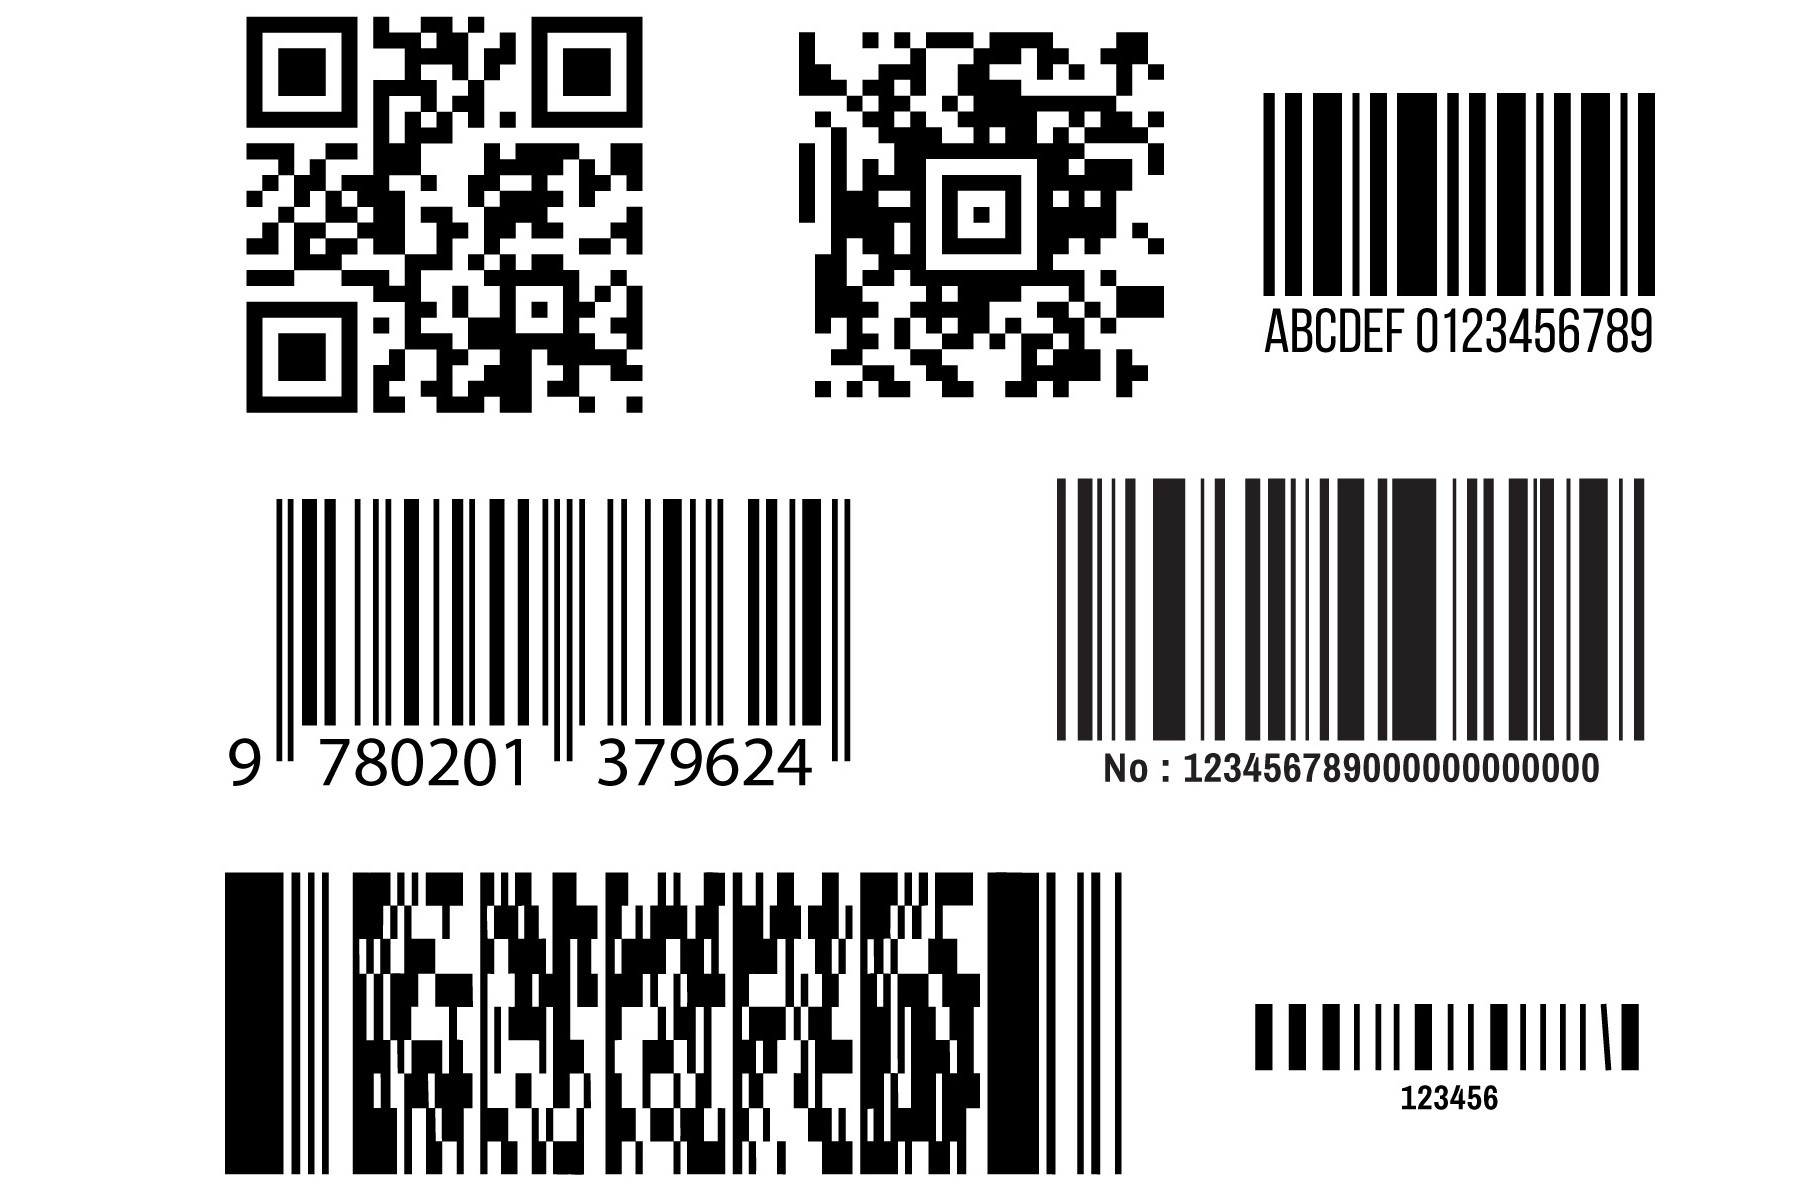 Tìm hiểu về barcode - mã vạch